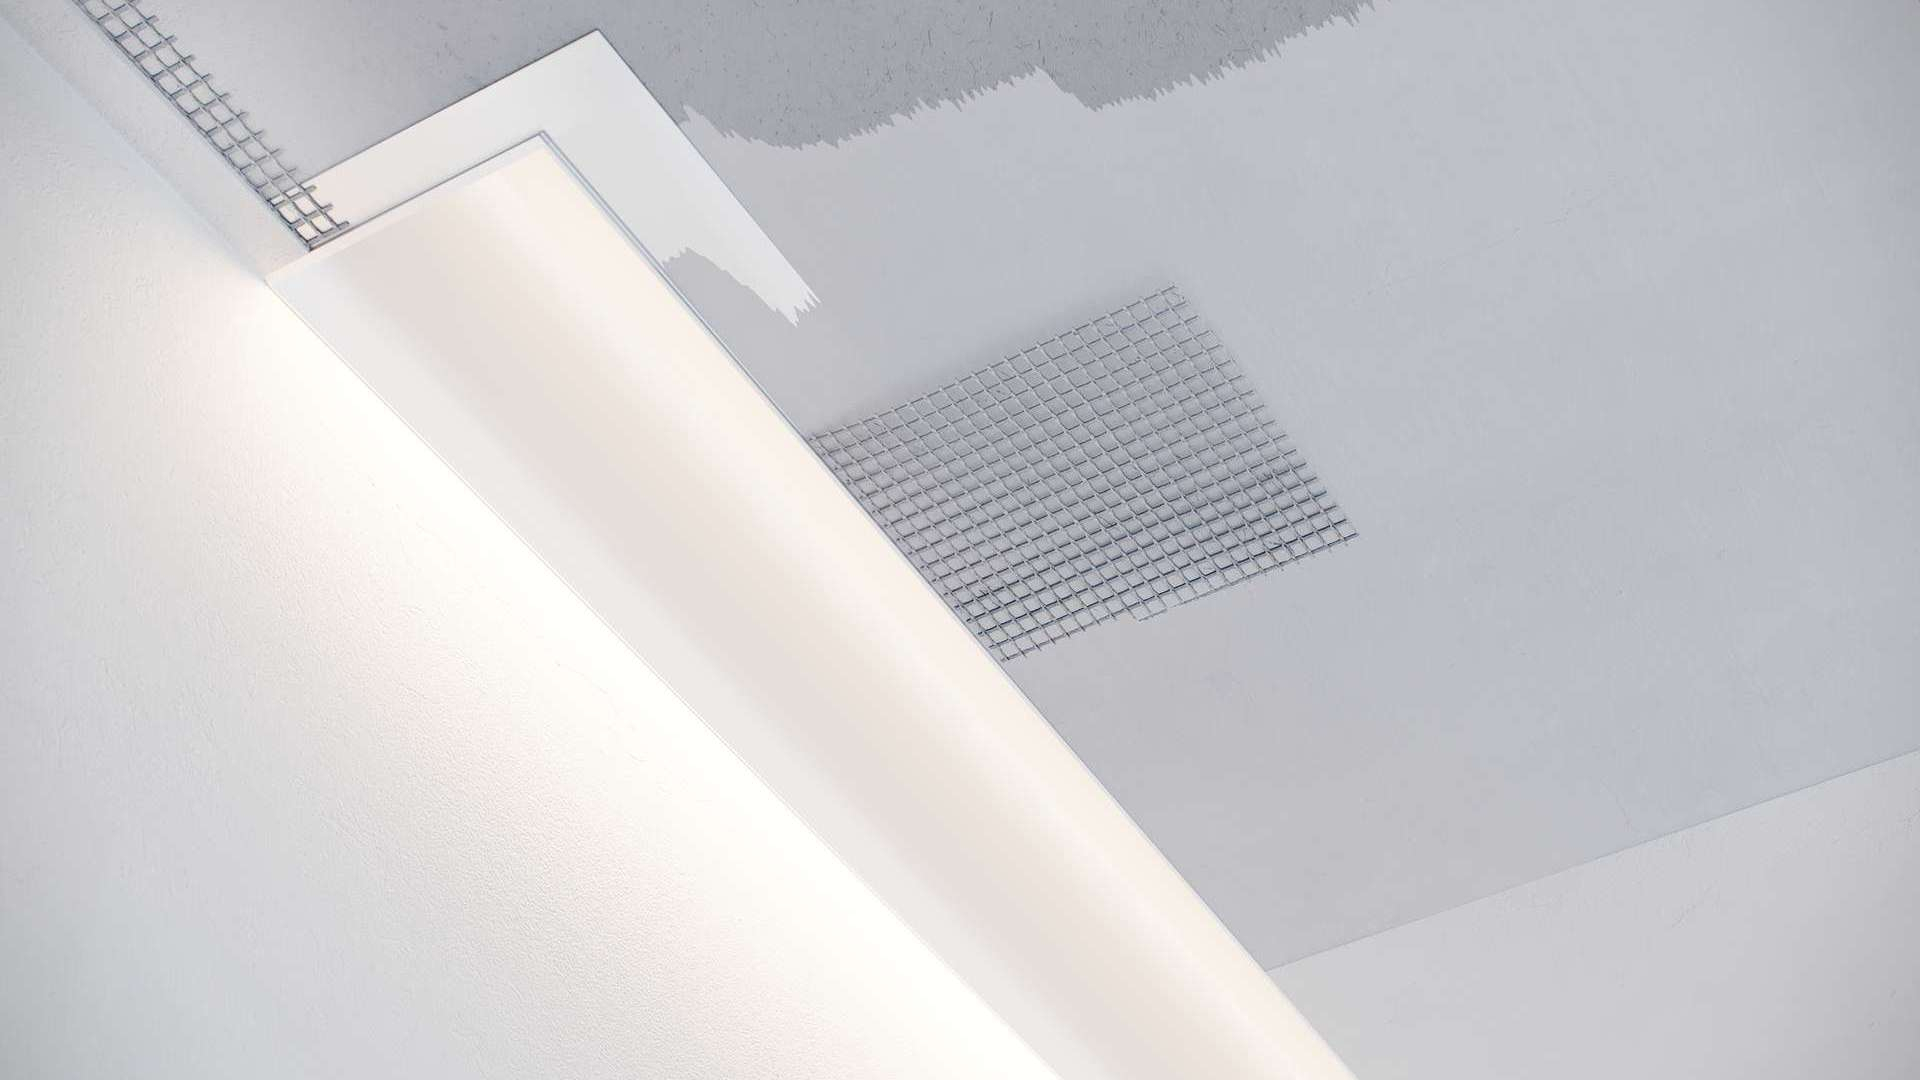 Profil LED LUMINES typ Veda biały lakierowany 3 m